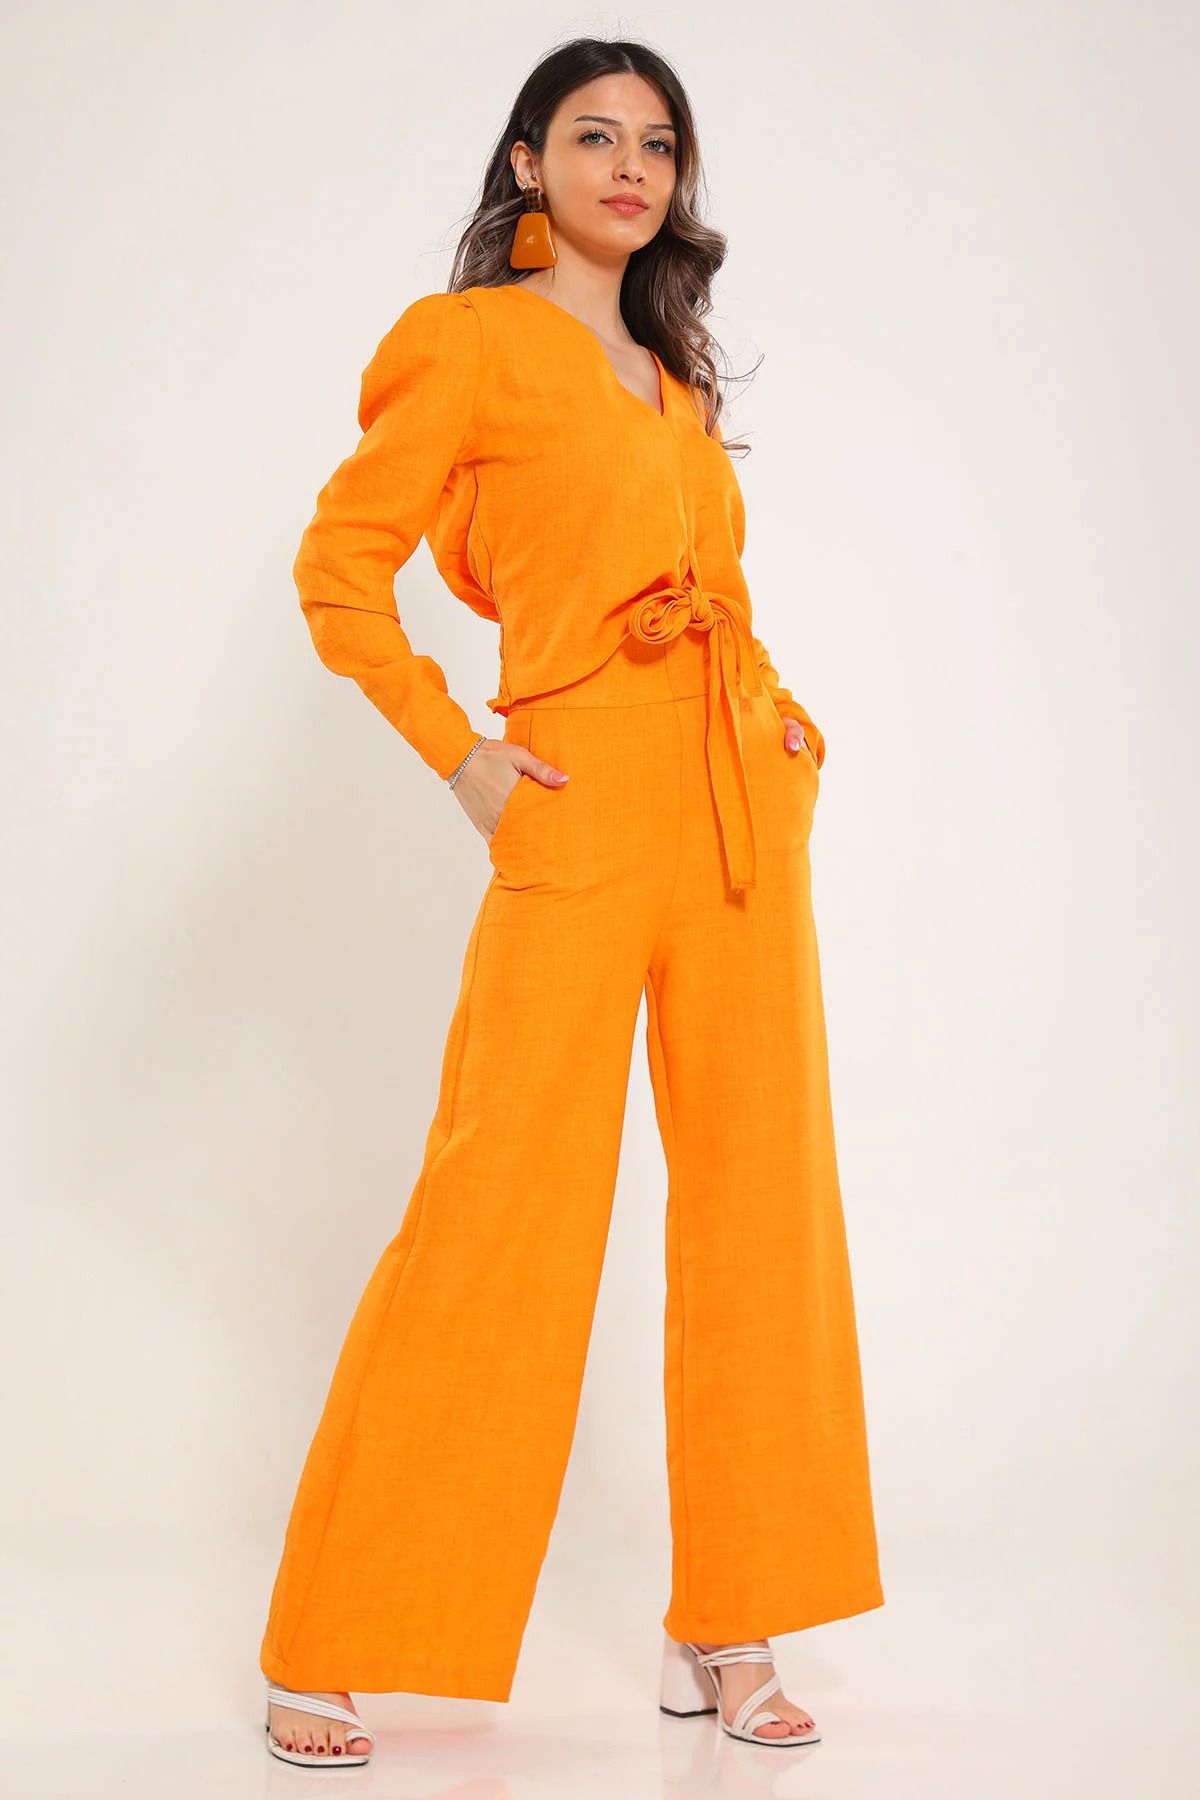 Julude Orange Kadın Kendinden Desenli Tesettür Gömlek Pantolon İkili Takım